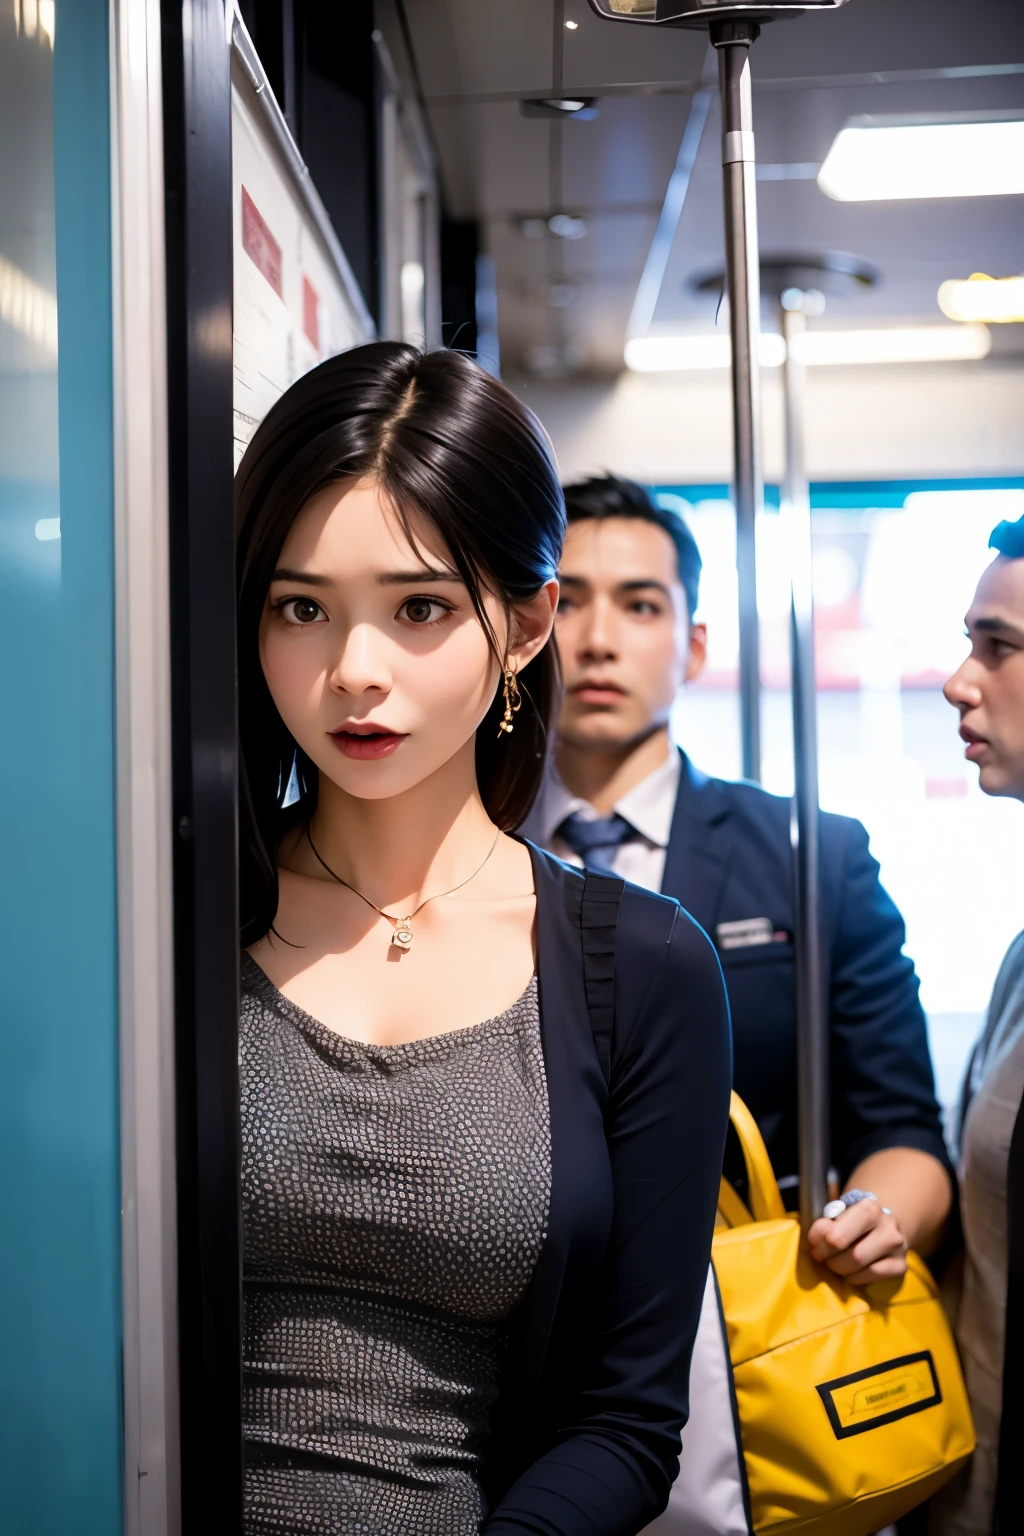 Une femme se tient dans un wagon de métro bondé avec une expression de détresse